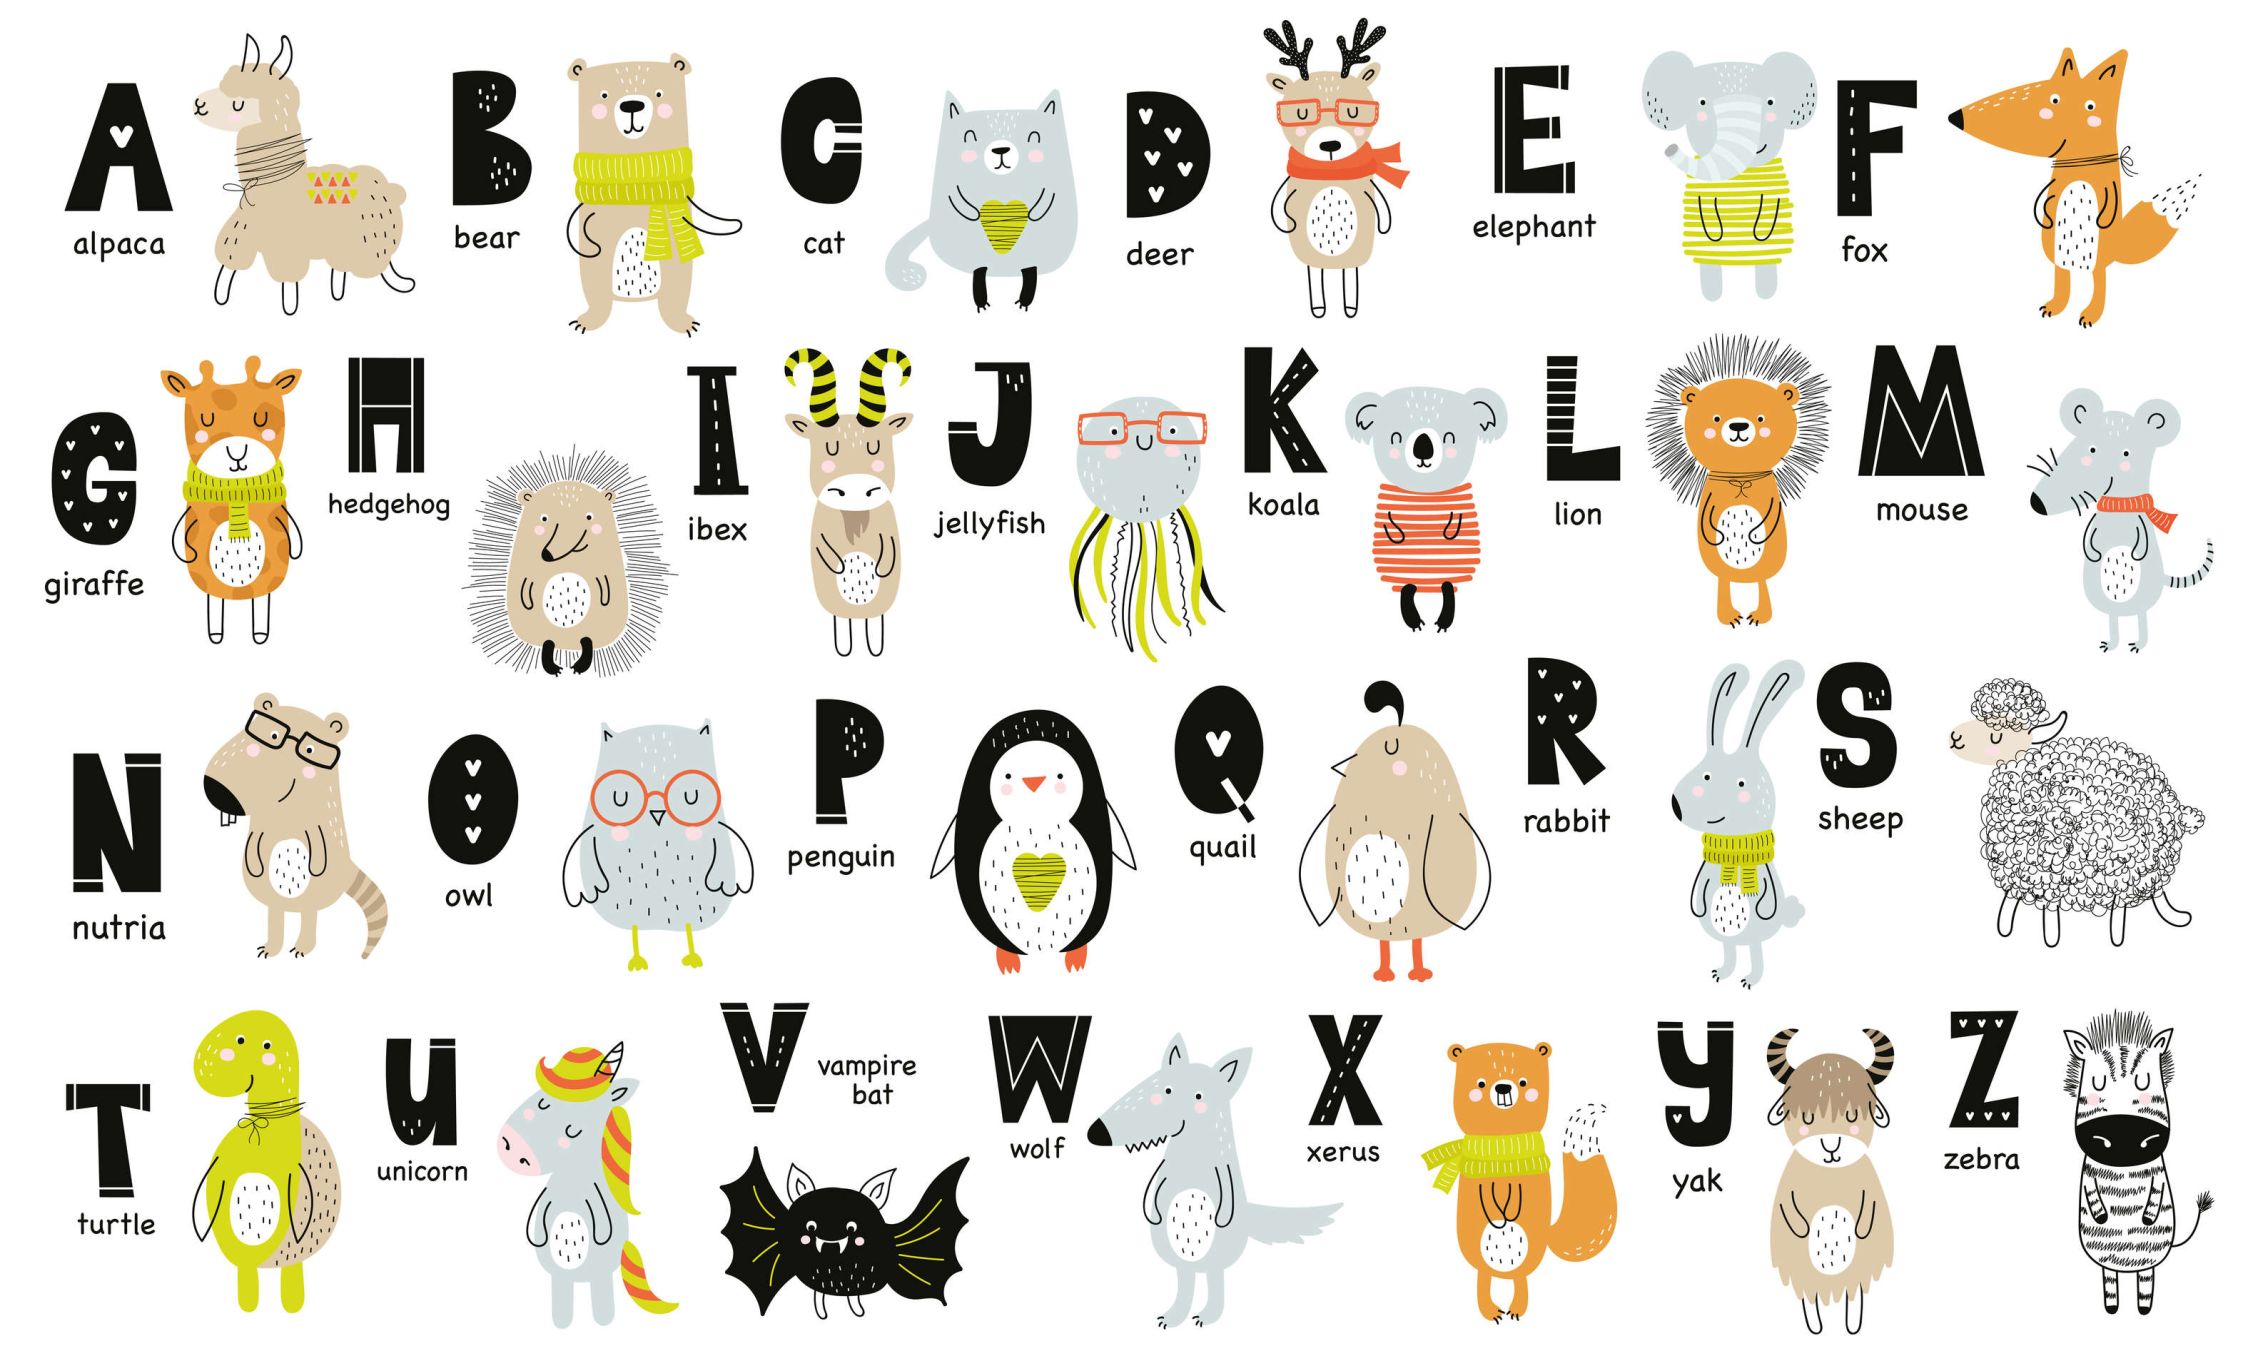             papiers peints à impression numérique Alphabet avec animaux et noms d'animaux - intissé lisse & mat
        